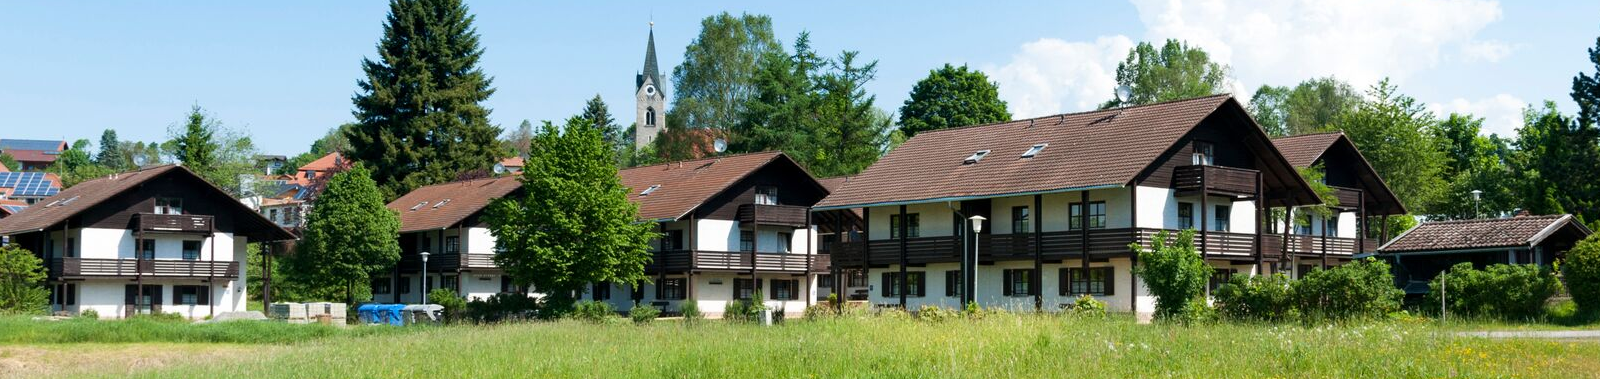 Ferienwohnung in Neuschnau | Ferienapartments in Neuschnau | Ferienhaus in Neuschnau | Urlaub in